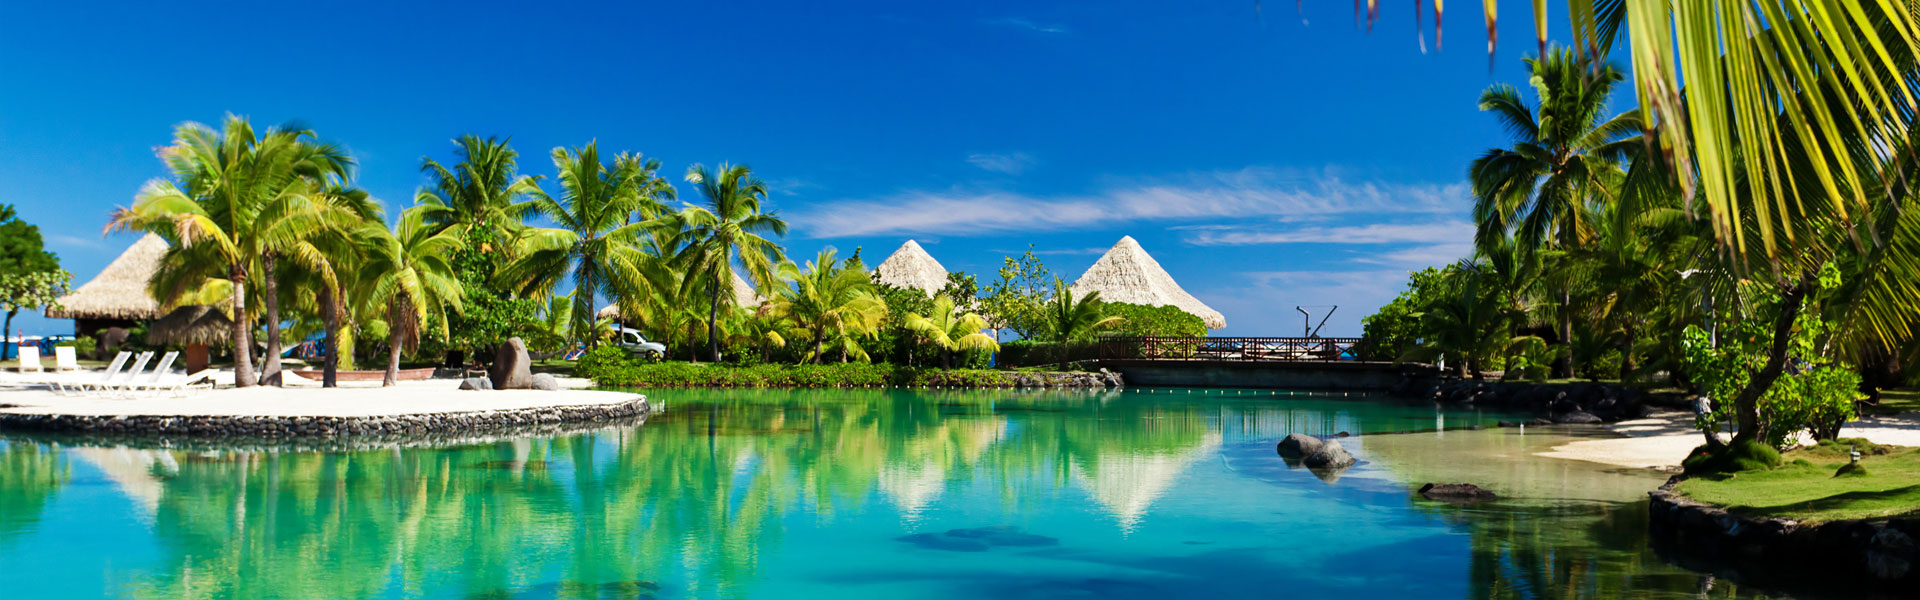 Dreams of Tahiti